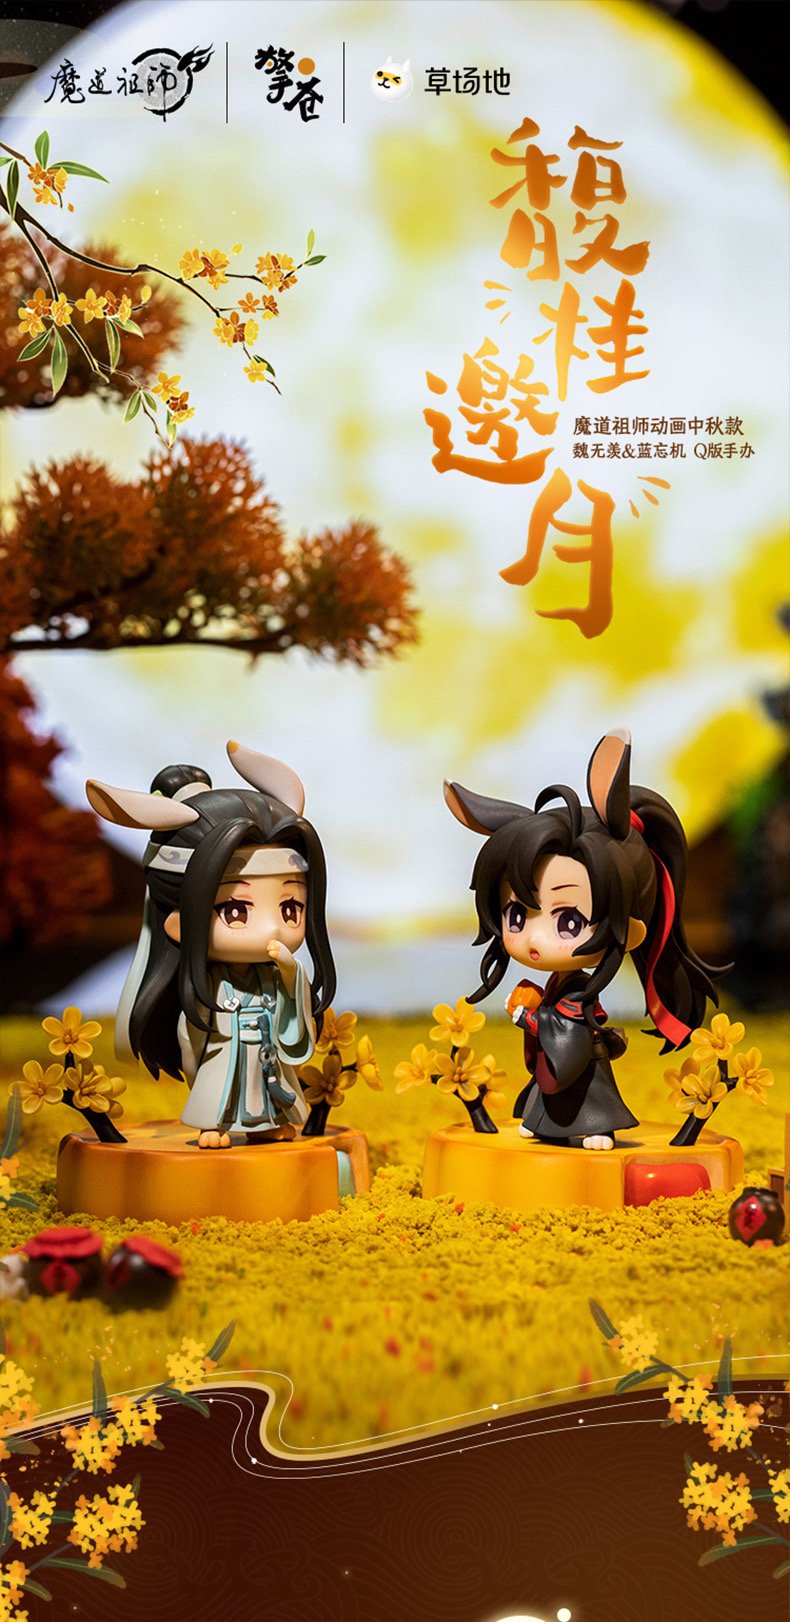 CALEMBOU Anime Figure, Cute Wei Wuxian LAN Wangji Chibi Figure Anime  Grandmaster of Demonic Cultivation Figure Set, PVC Chibi Figure for Mo Dao  Zu Shi